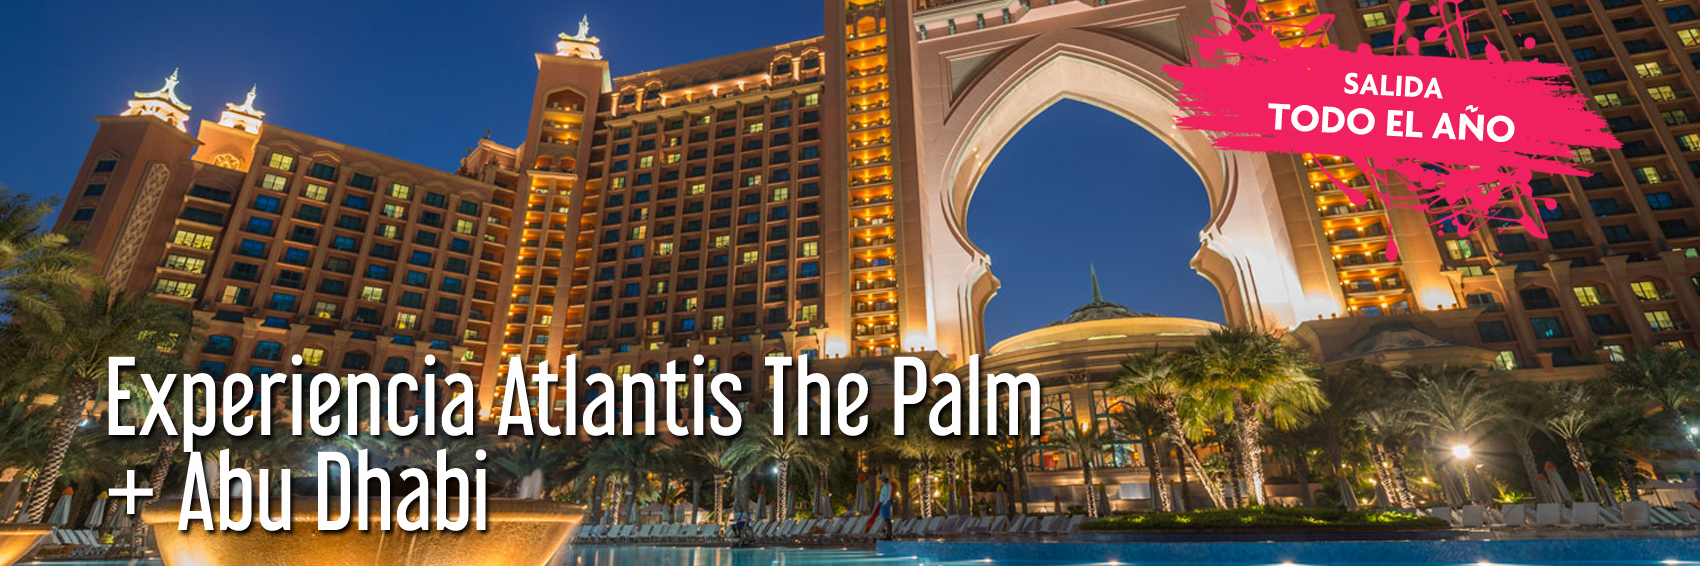 Atlantis the Palm y Abu Dhabi 5 noches